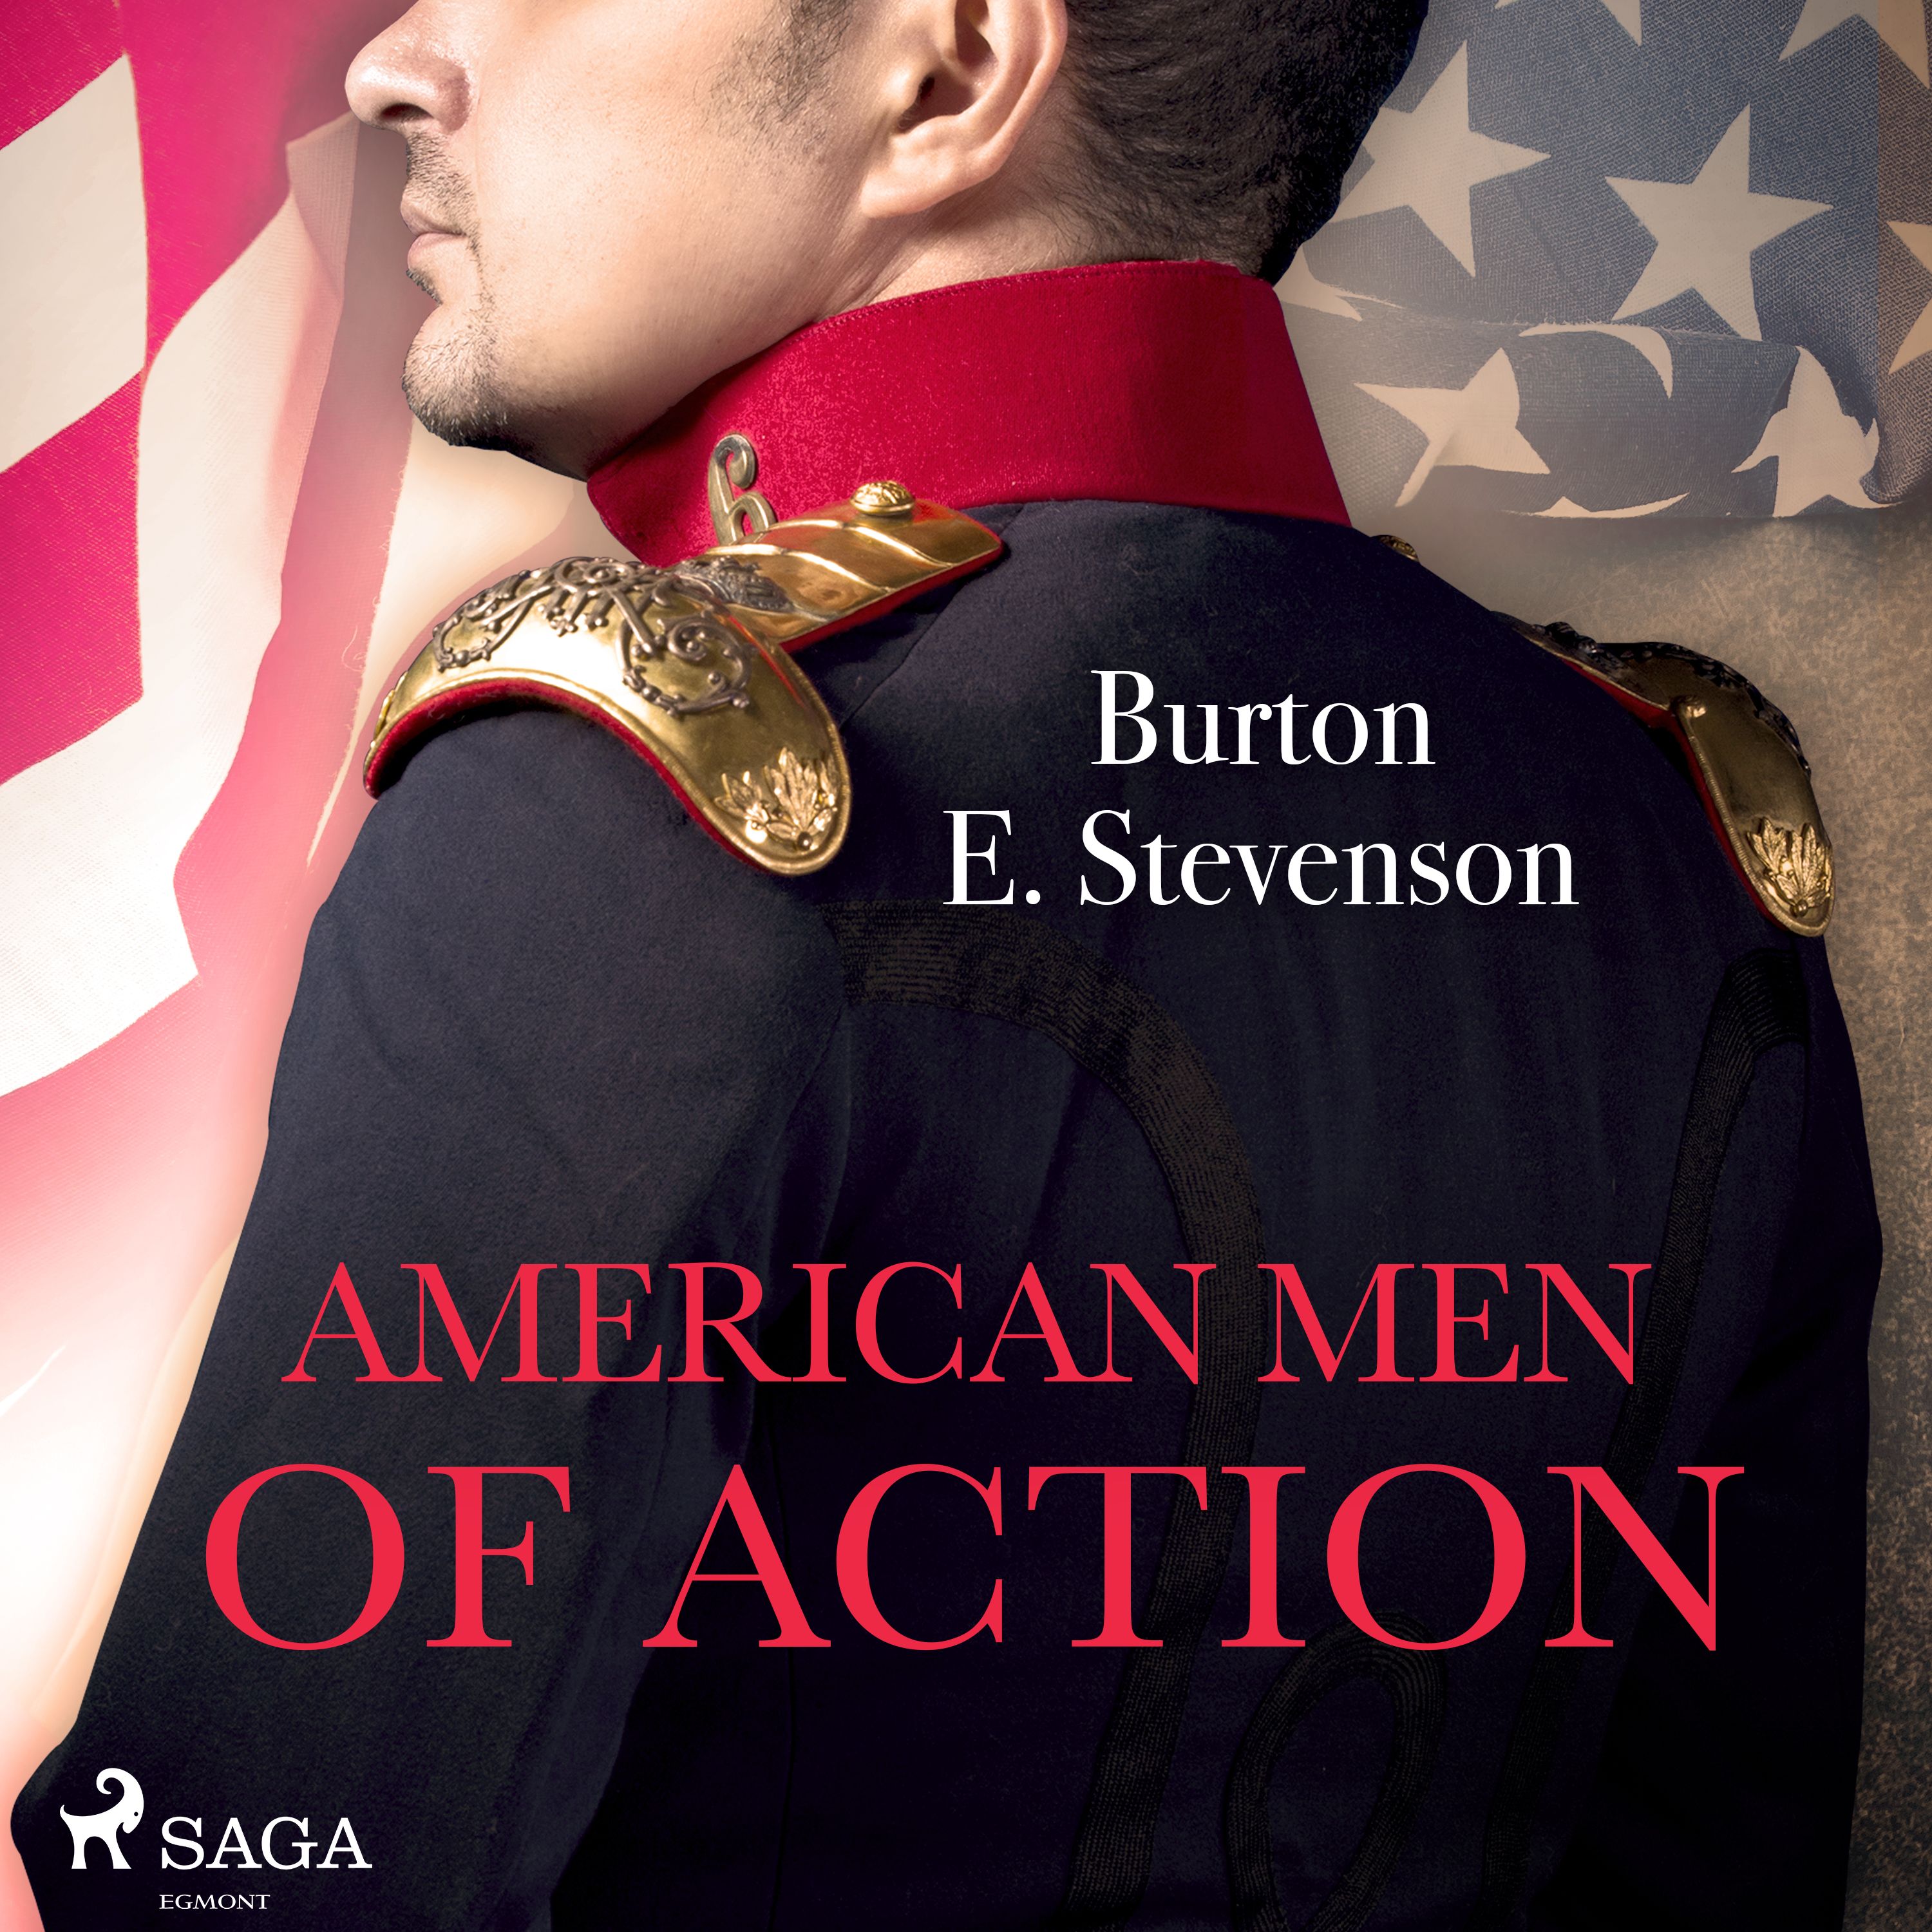 American Men of Action, ljudbok av Burton E. Stevenson